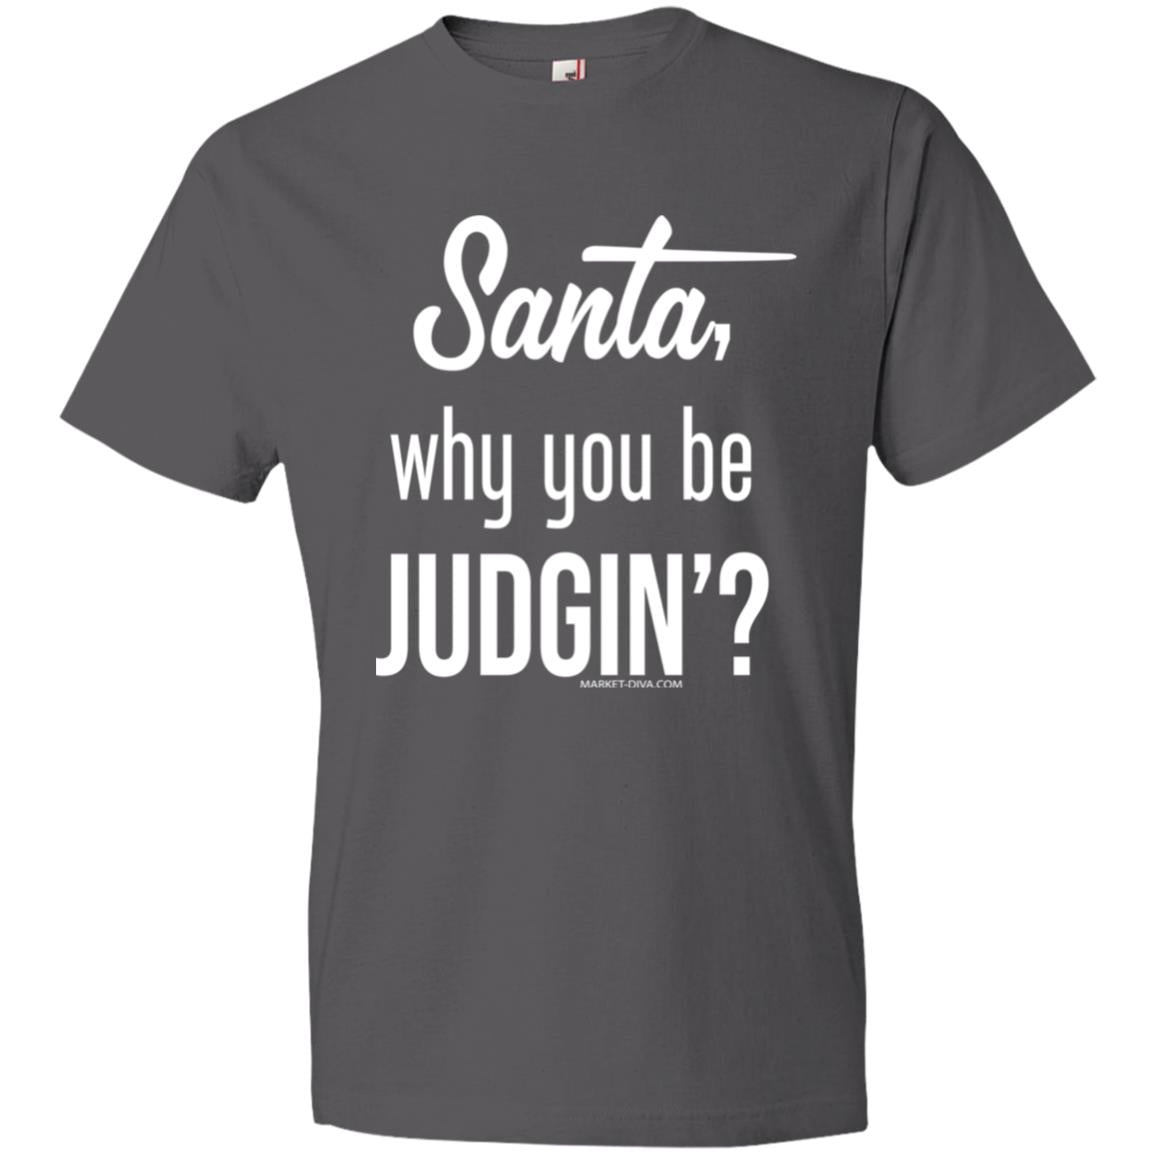 Christmas: Santa - Why you judgin'?